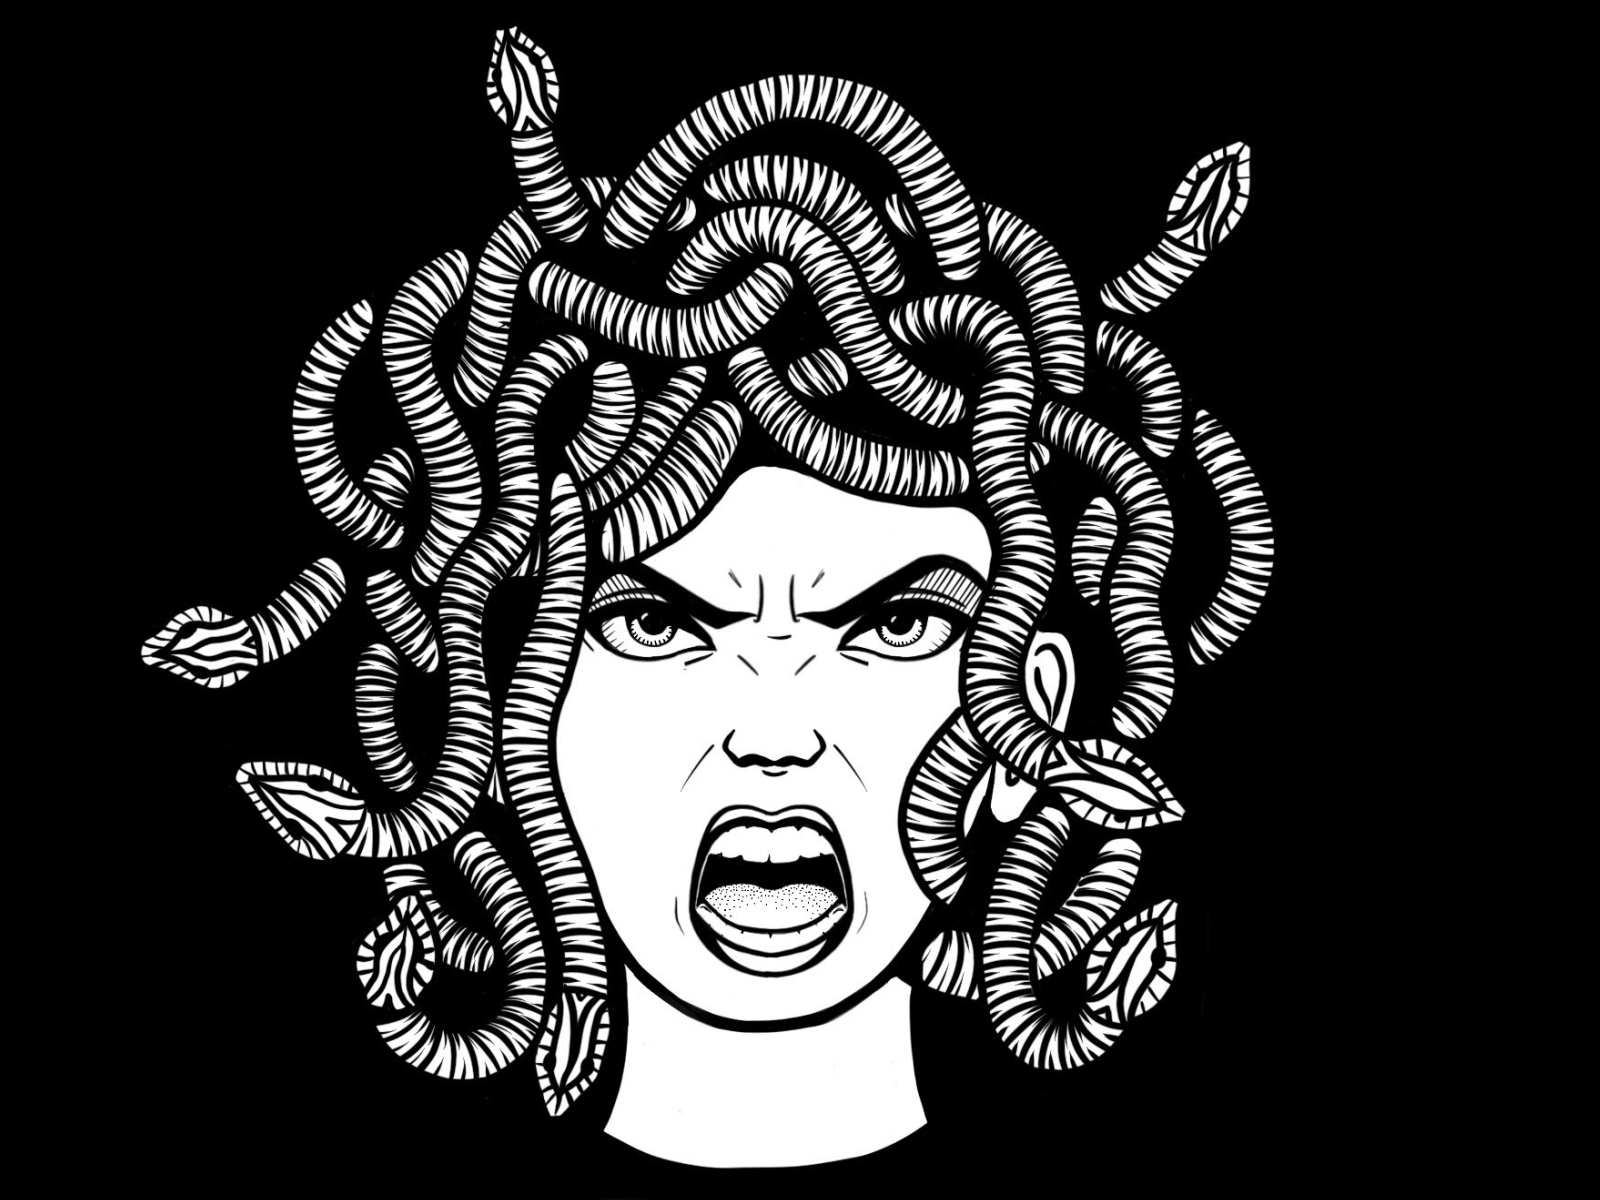 Medusa T-shit Design by Alex Garnett on Dribbble